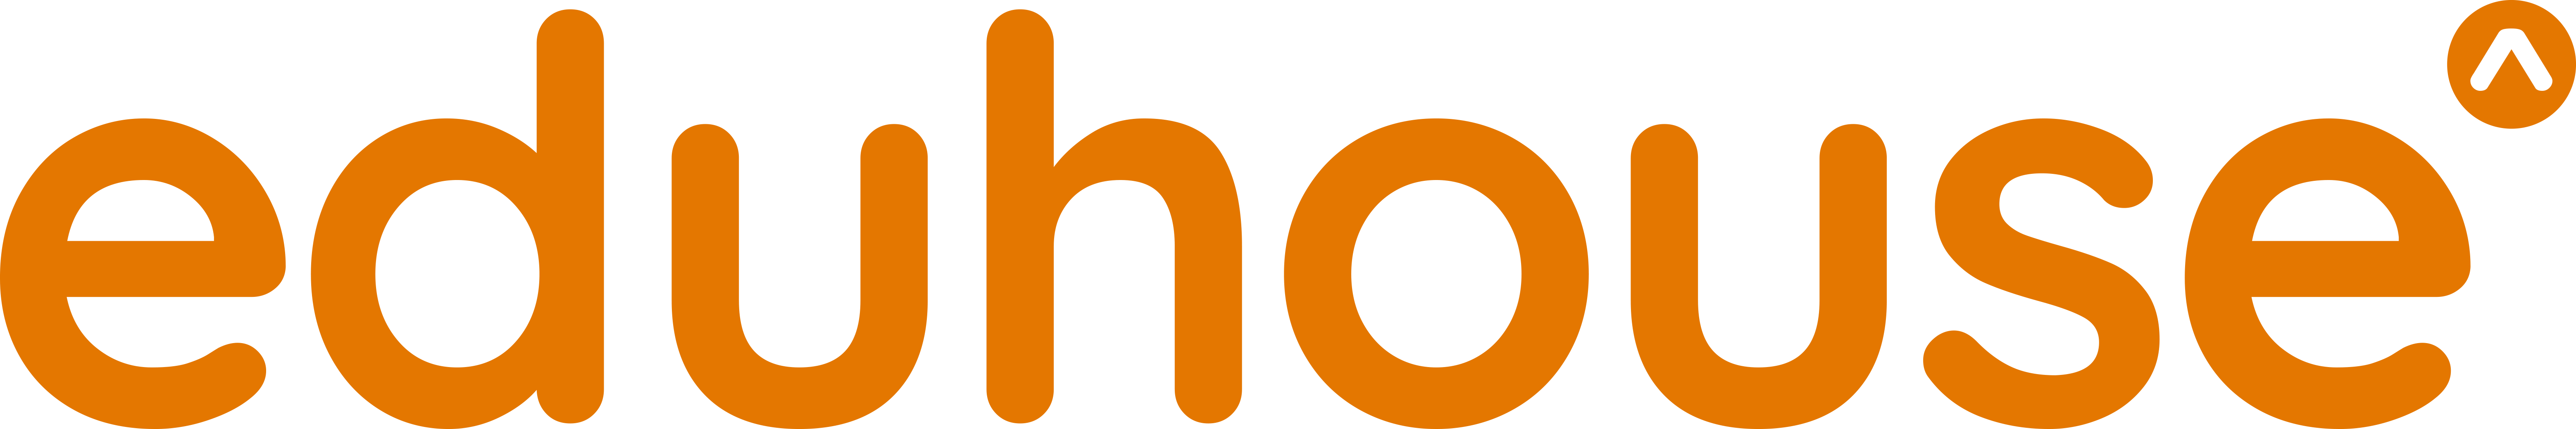 Kuvassa on Eduhouse-logo. Eduhouse toimii tämän koulutuksen kumppanina.